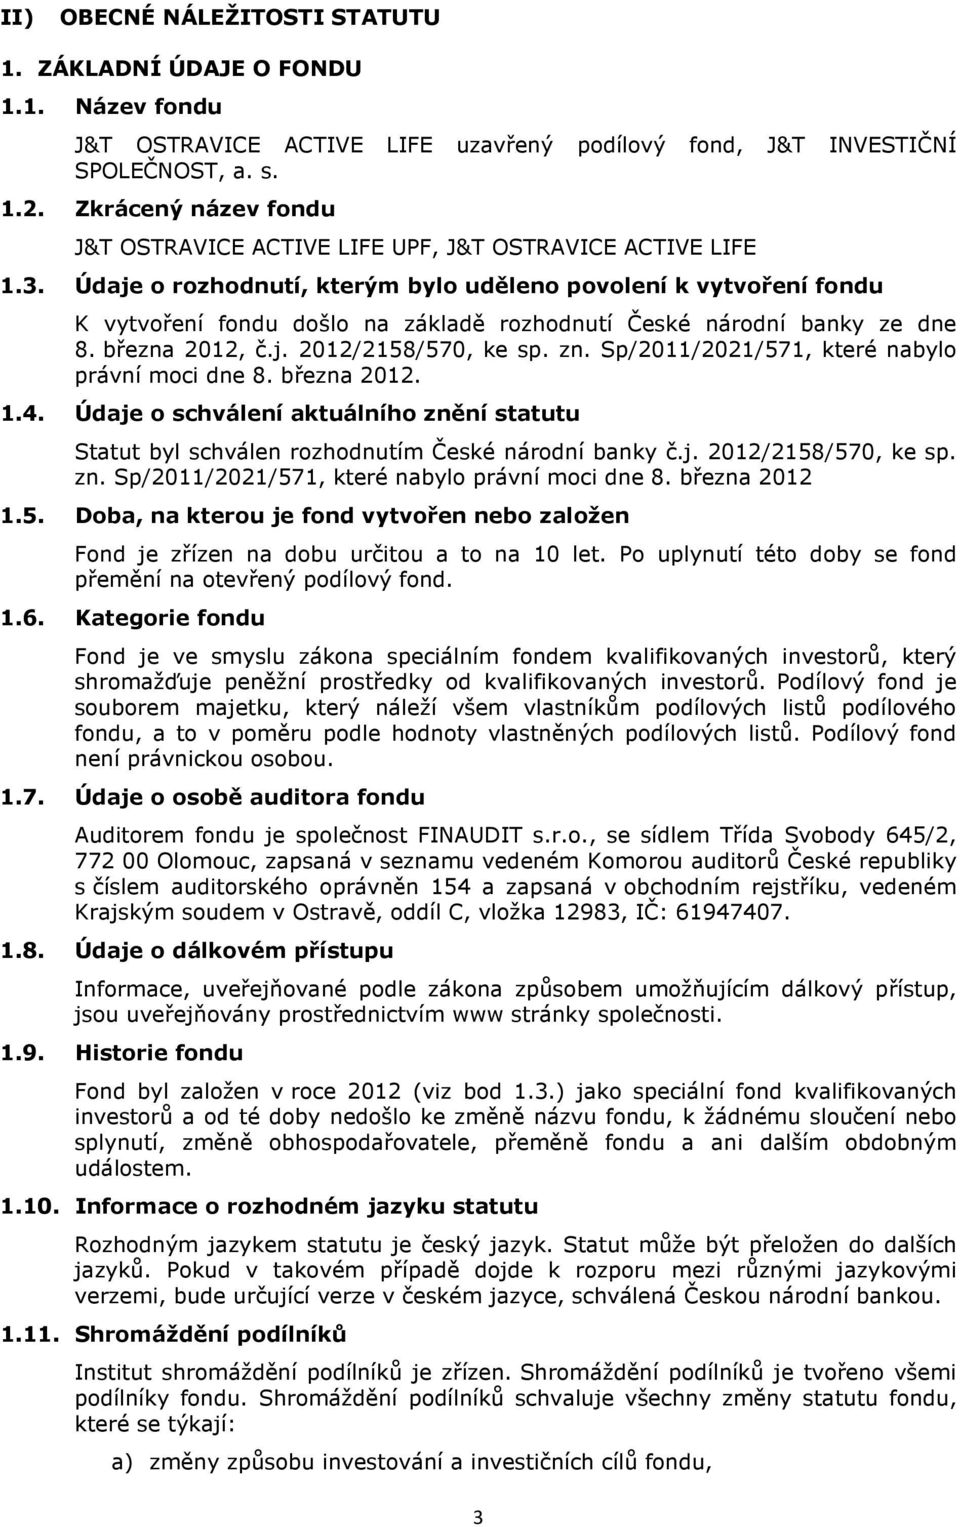 Údaje o rozhodnutí, kterým bylo uděleno povolení k vytvoření fondu K vytvoření fondu došlo na základě rozhodnutí České národní banky ze dne 8. března 2012, č.j. 2012/2158/570, ke sp. zn.